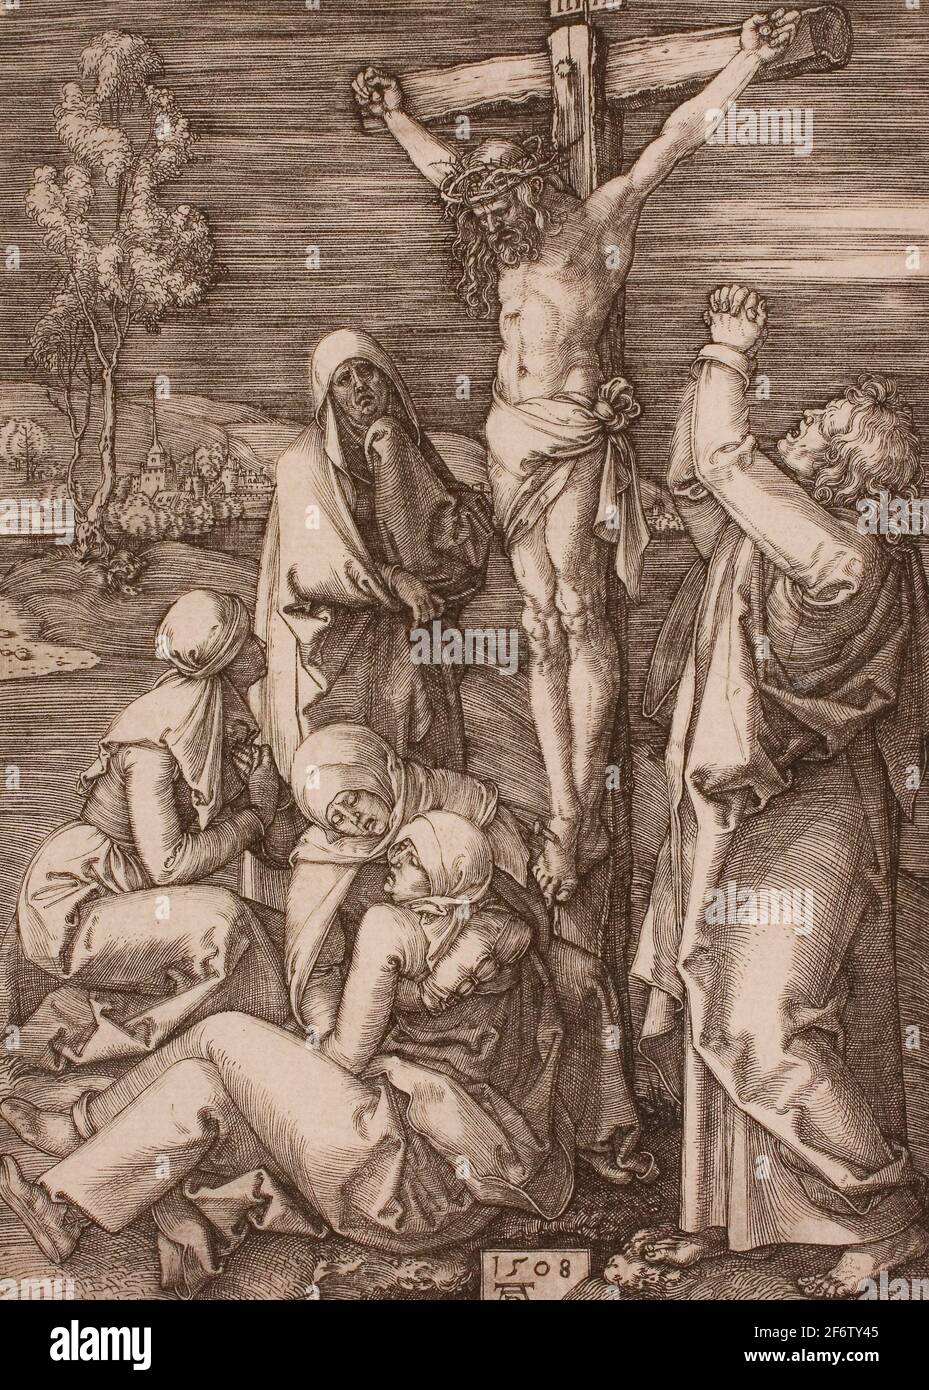 Autor: Albrecht Drer. Kreuzigung - 1508 - Albrecht Drer Deutsch, 1471-1528. Gravur in schwarz auf elfenbeinfarbenem Papier. Deutschland. Stockfoto